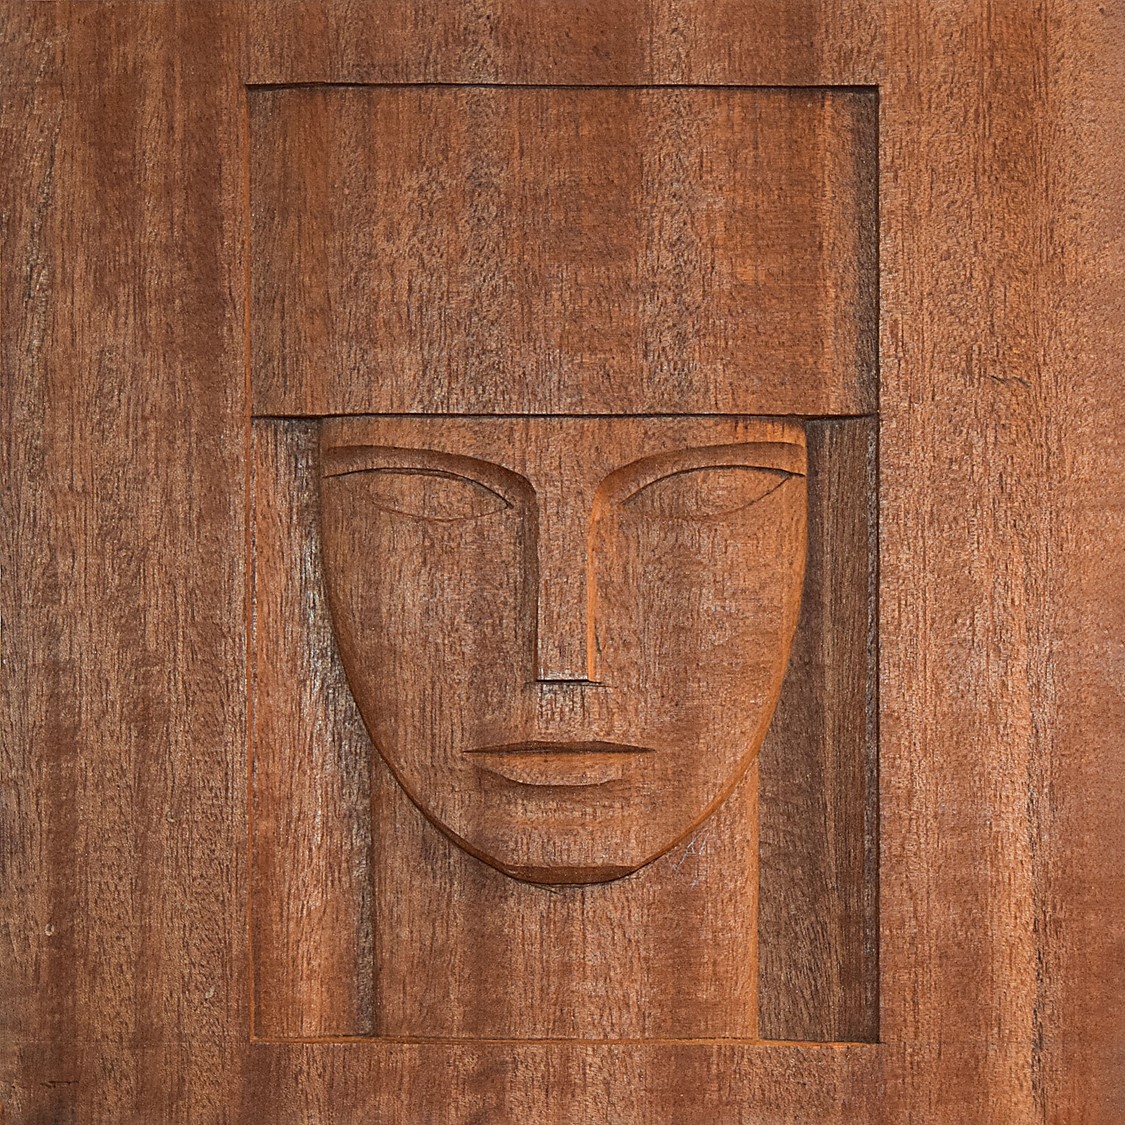 Rzeźba w drewnie przedstawiająca głowę królowej